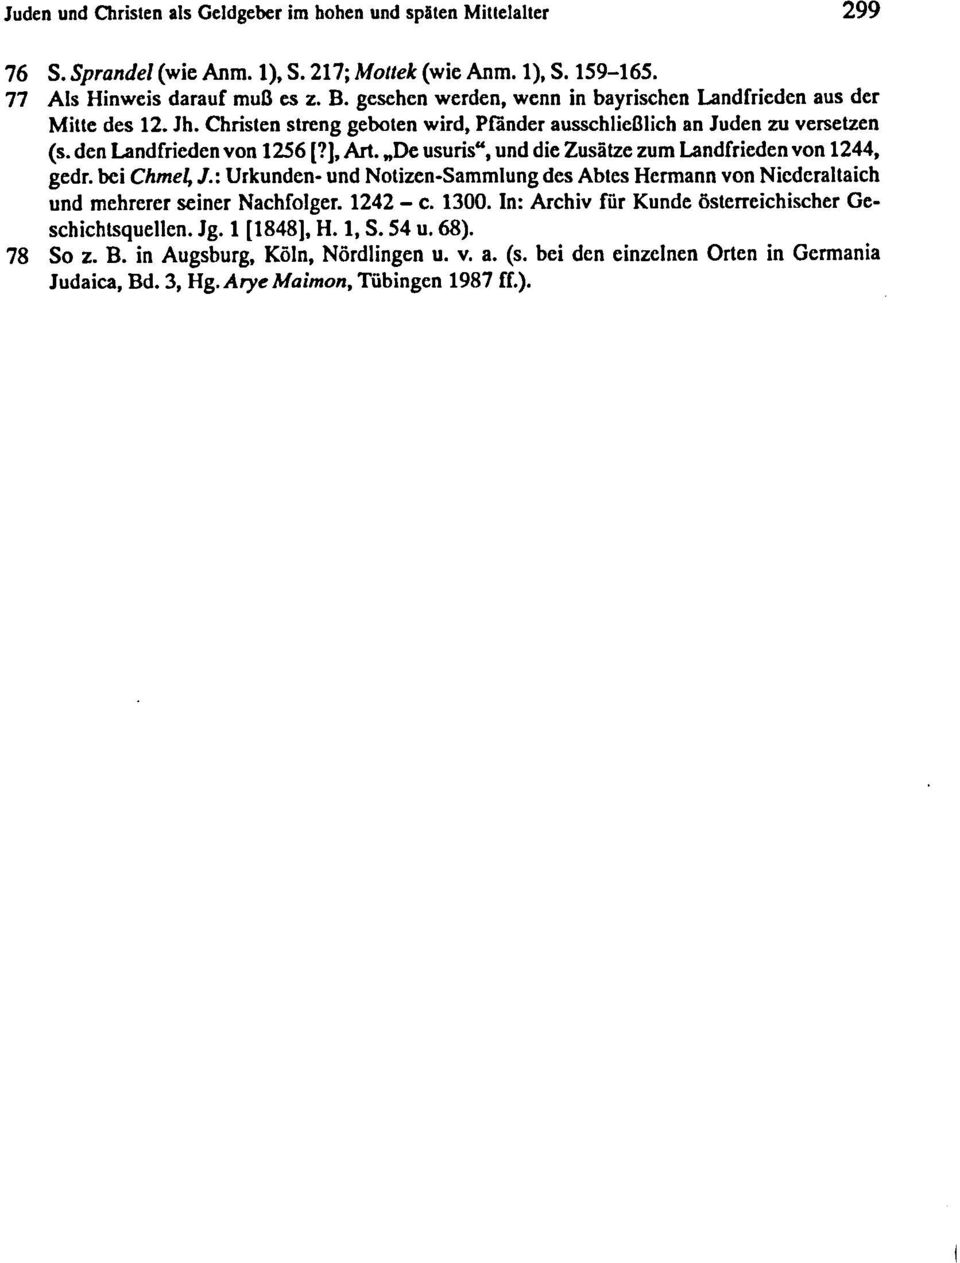 "De usuris", und die Zusäze zum Landfrieden von 1244, gedr. bei Chmel; J.: Urkunden- und Noizen-Sammlung des Abes Hermann von NiederaIaieh und mehrerer seiner Nachfolger. 1242 - c. 1300.